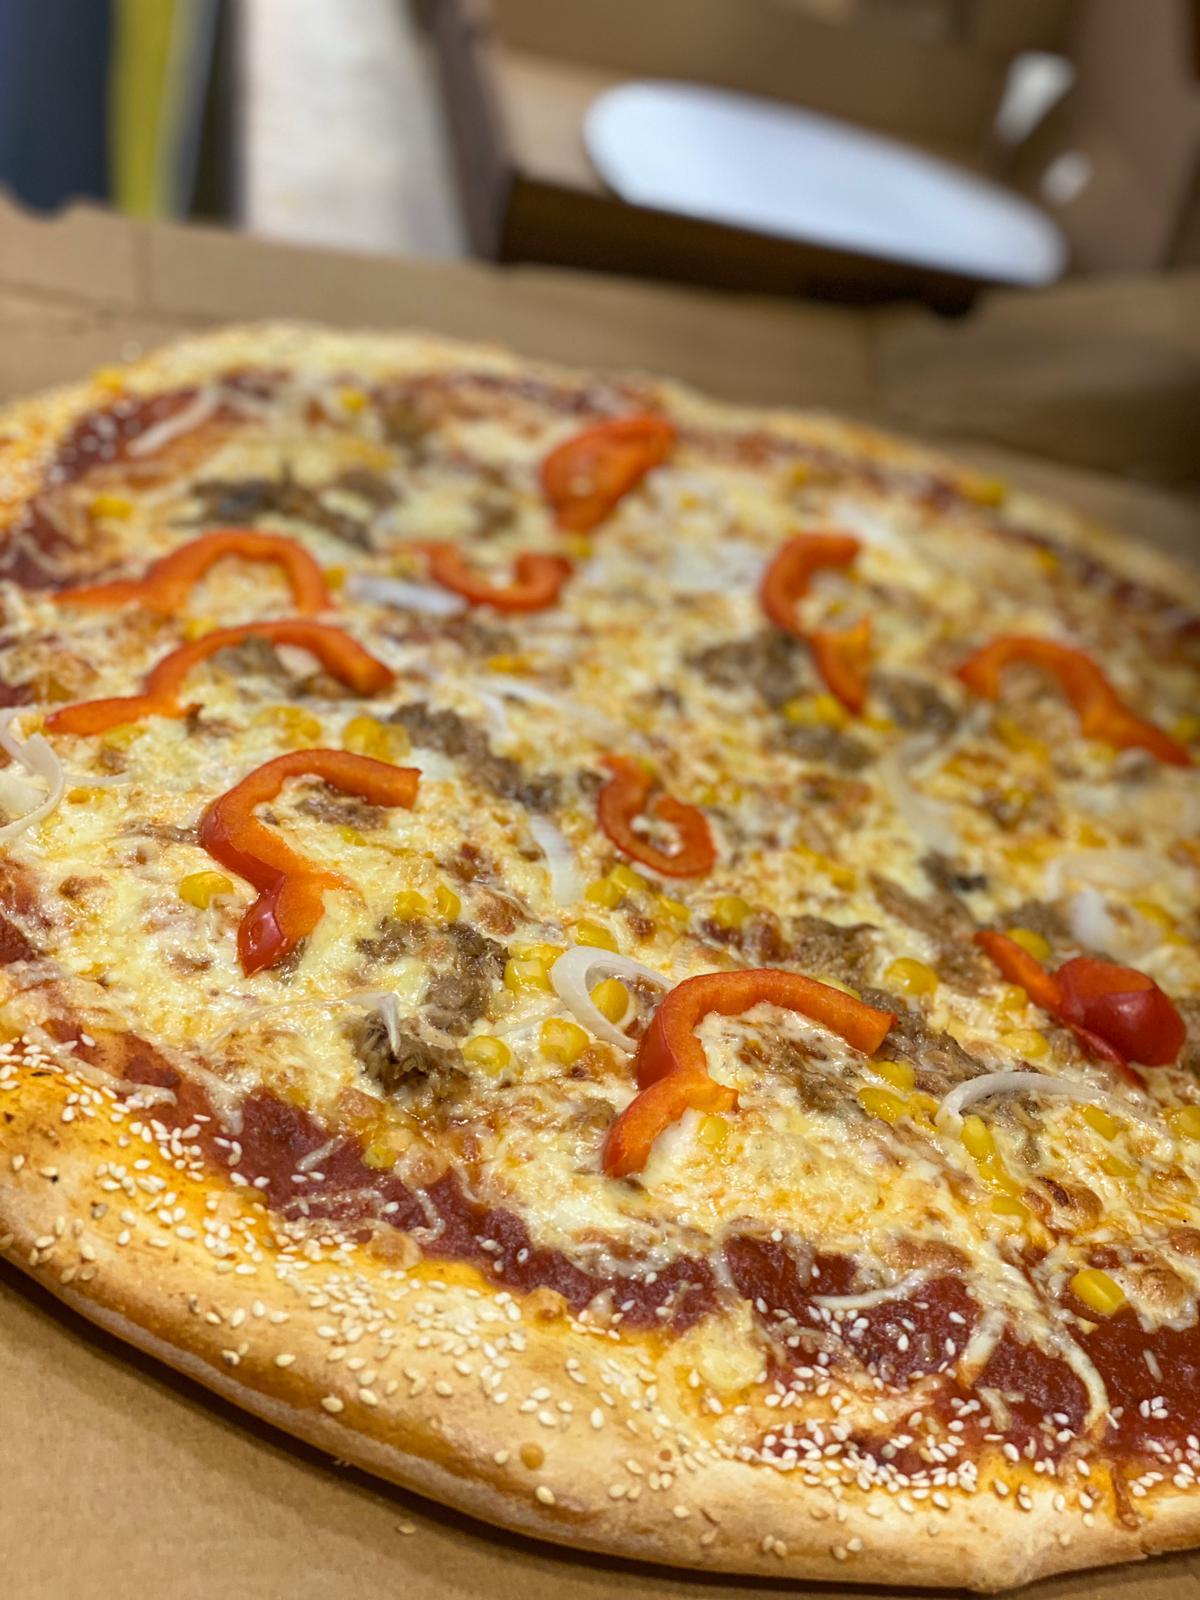 بيتزا كبيرة مع كولا فقط بـ67 شيكل من بيتزا كالميرو